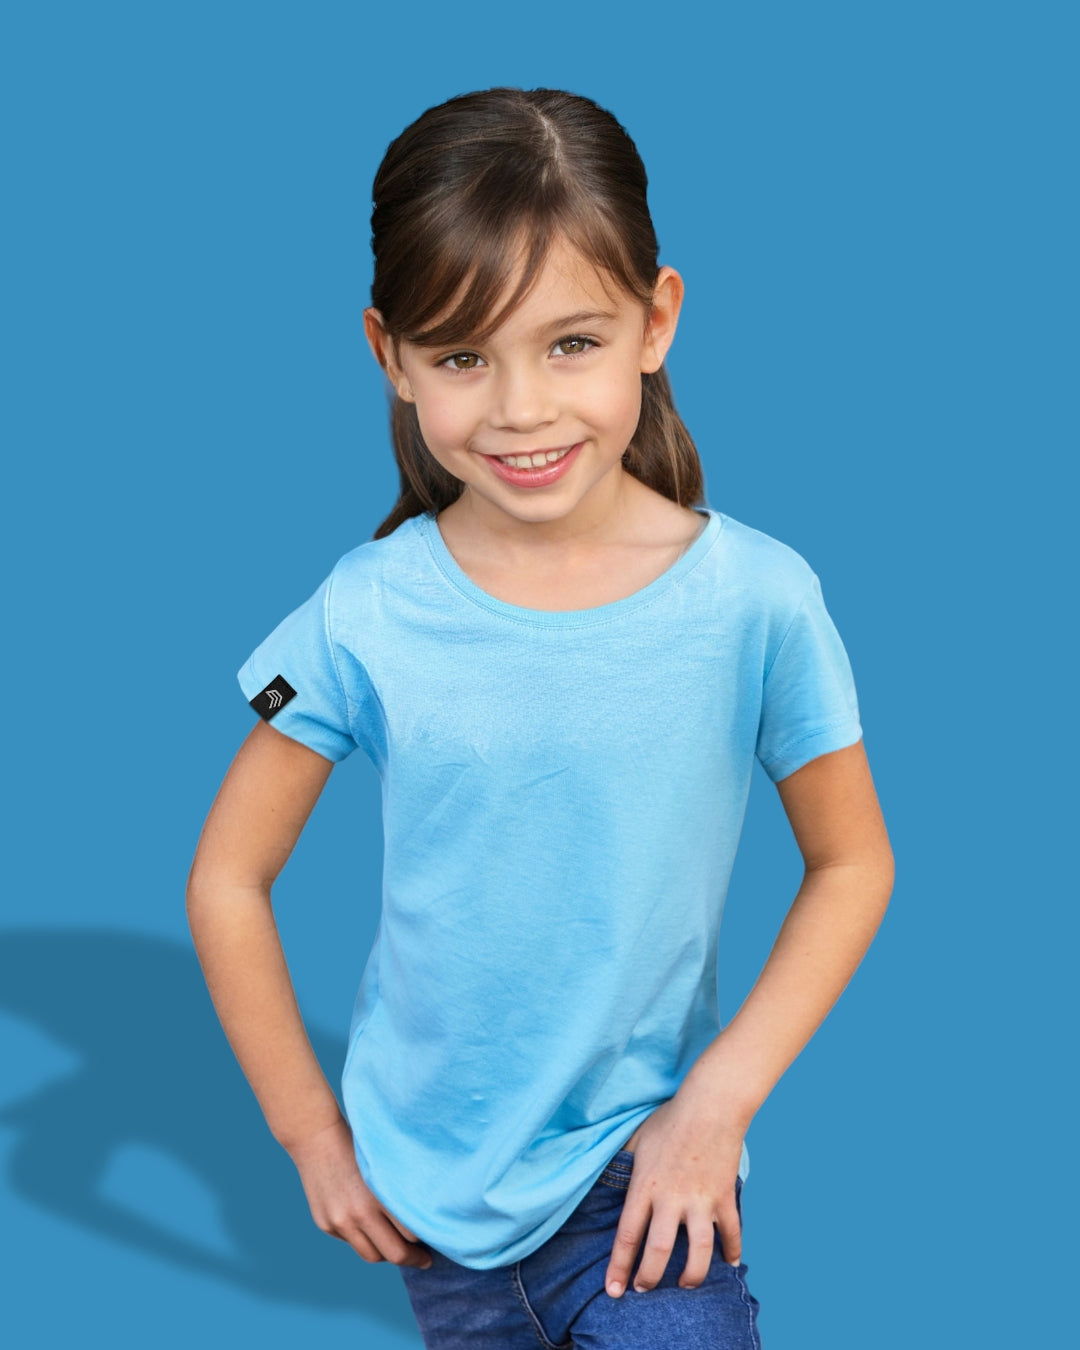 JAN 8007G ― Kinder/Mädchen Bio-Baumwolle T-Shirt - Sky Blau